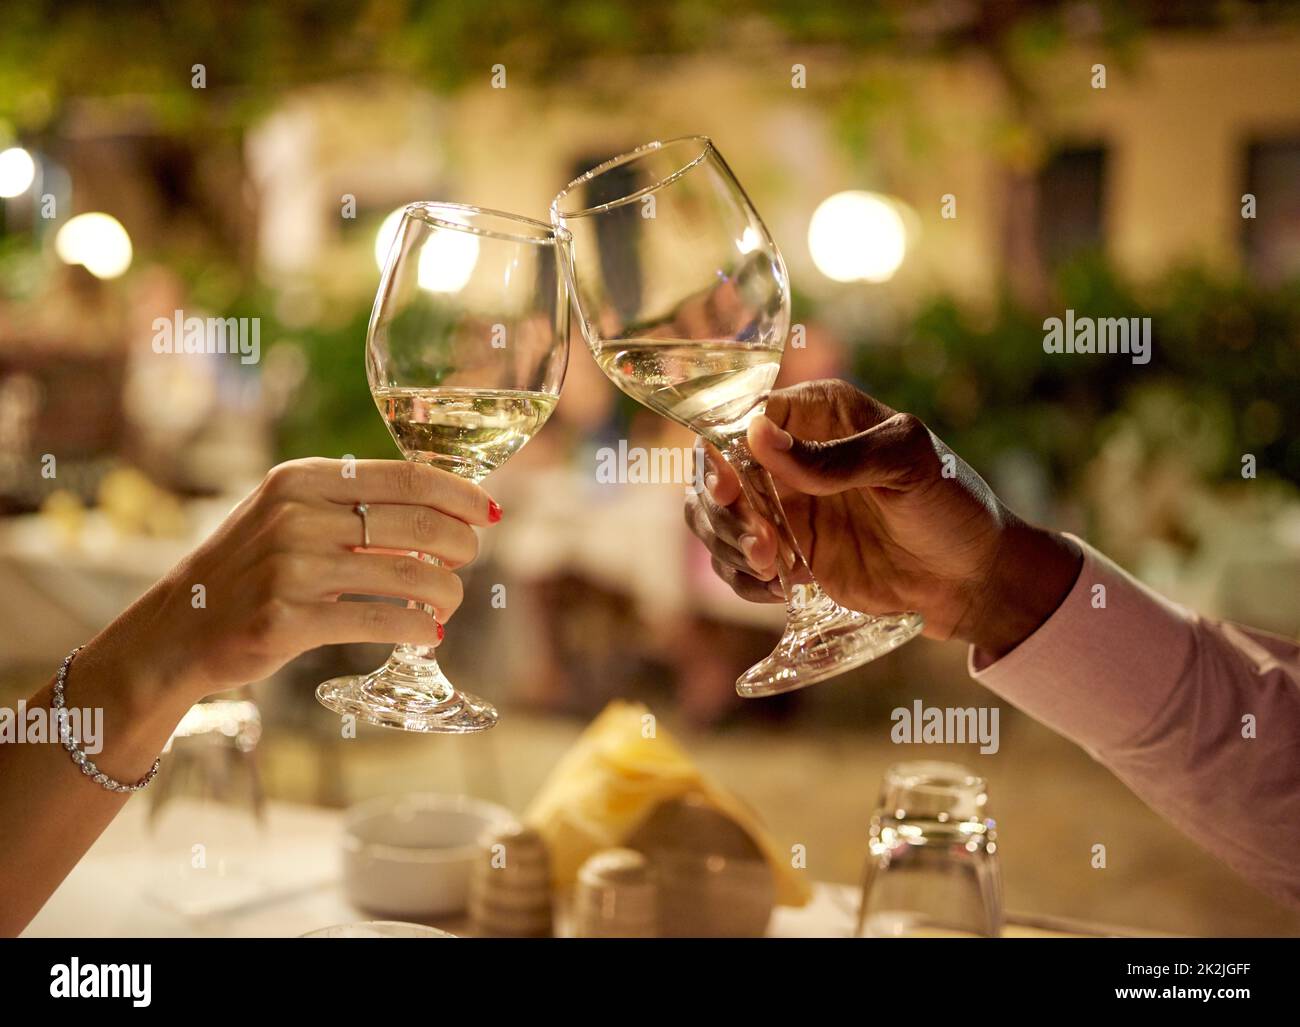 Cette date ne pourrait pas aller mieux. Photo d'un couple en train de faire un toast tout en étant romantique. Banque D'Images